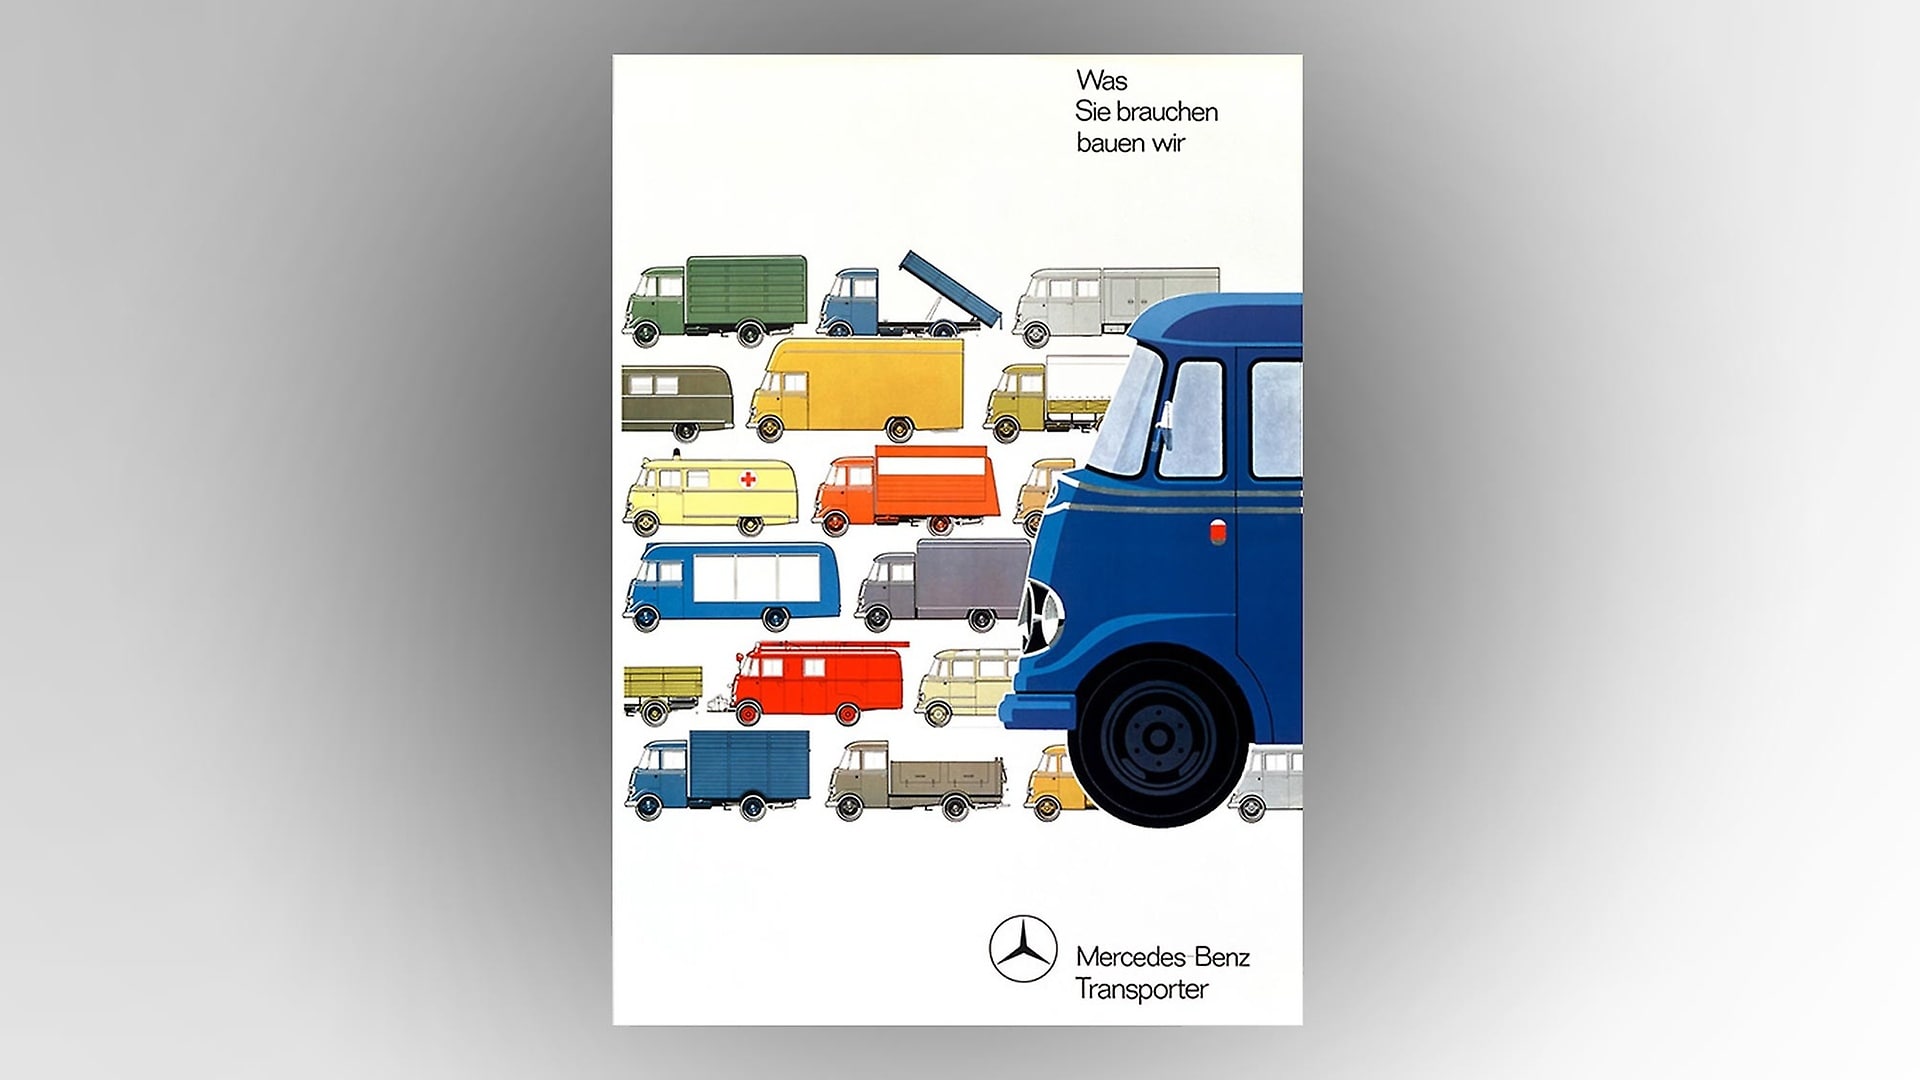 Mercedes-Benz model L 319 van, poster from 1961.